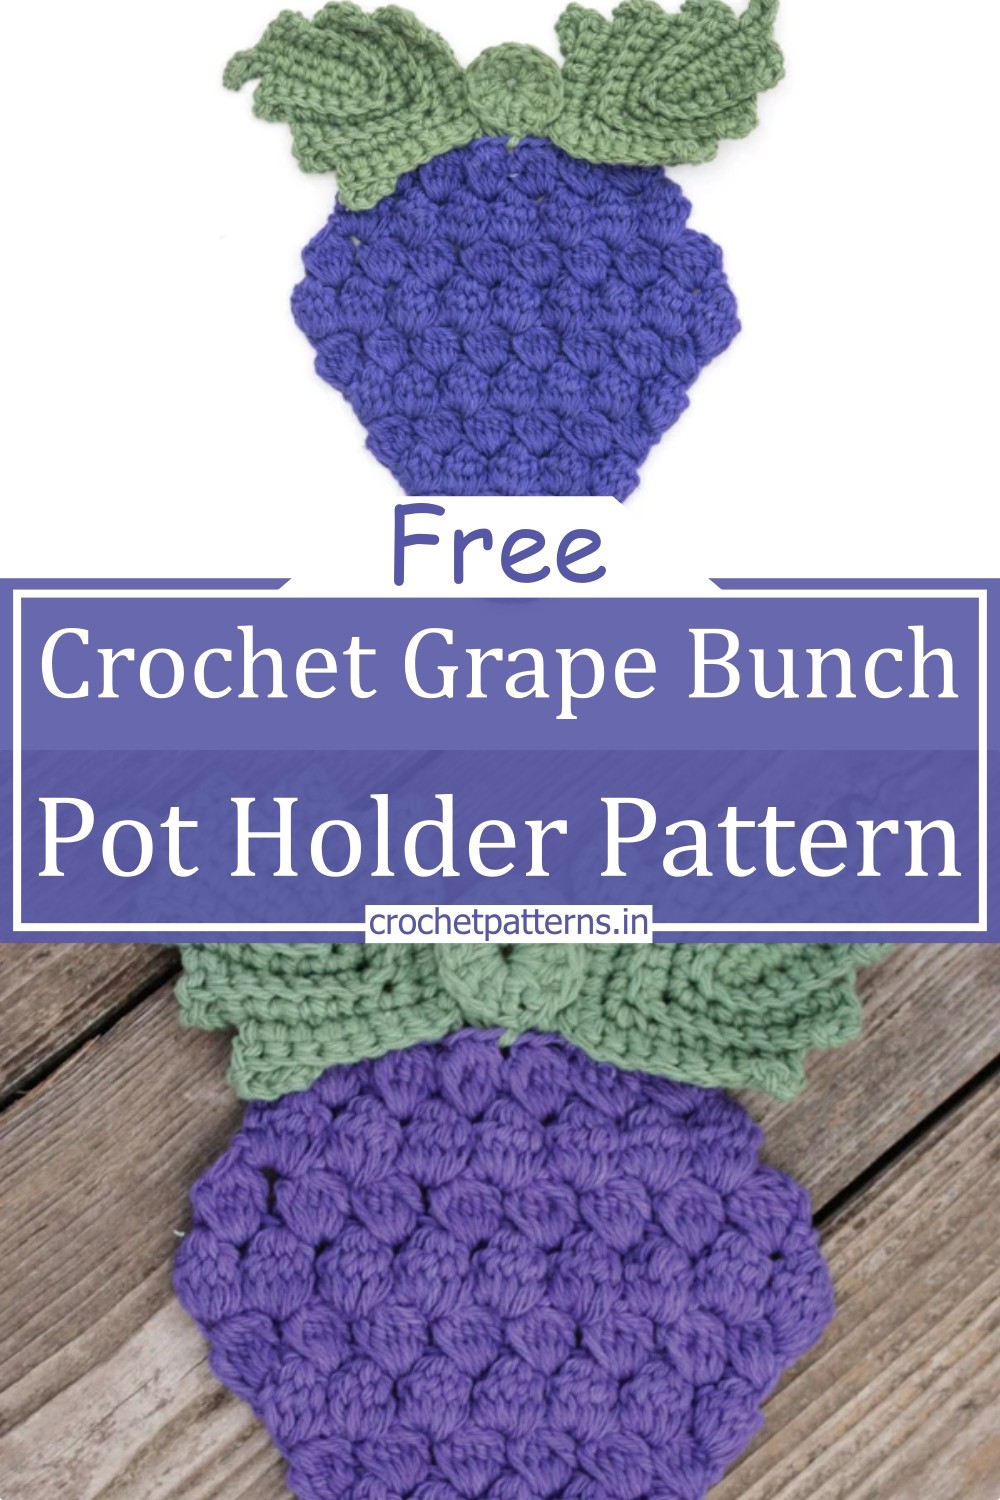 Crochet Grape Bunch Pot Holder Pattern